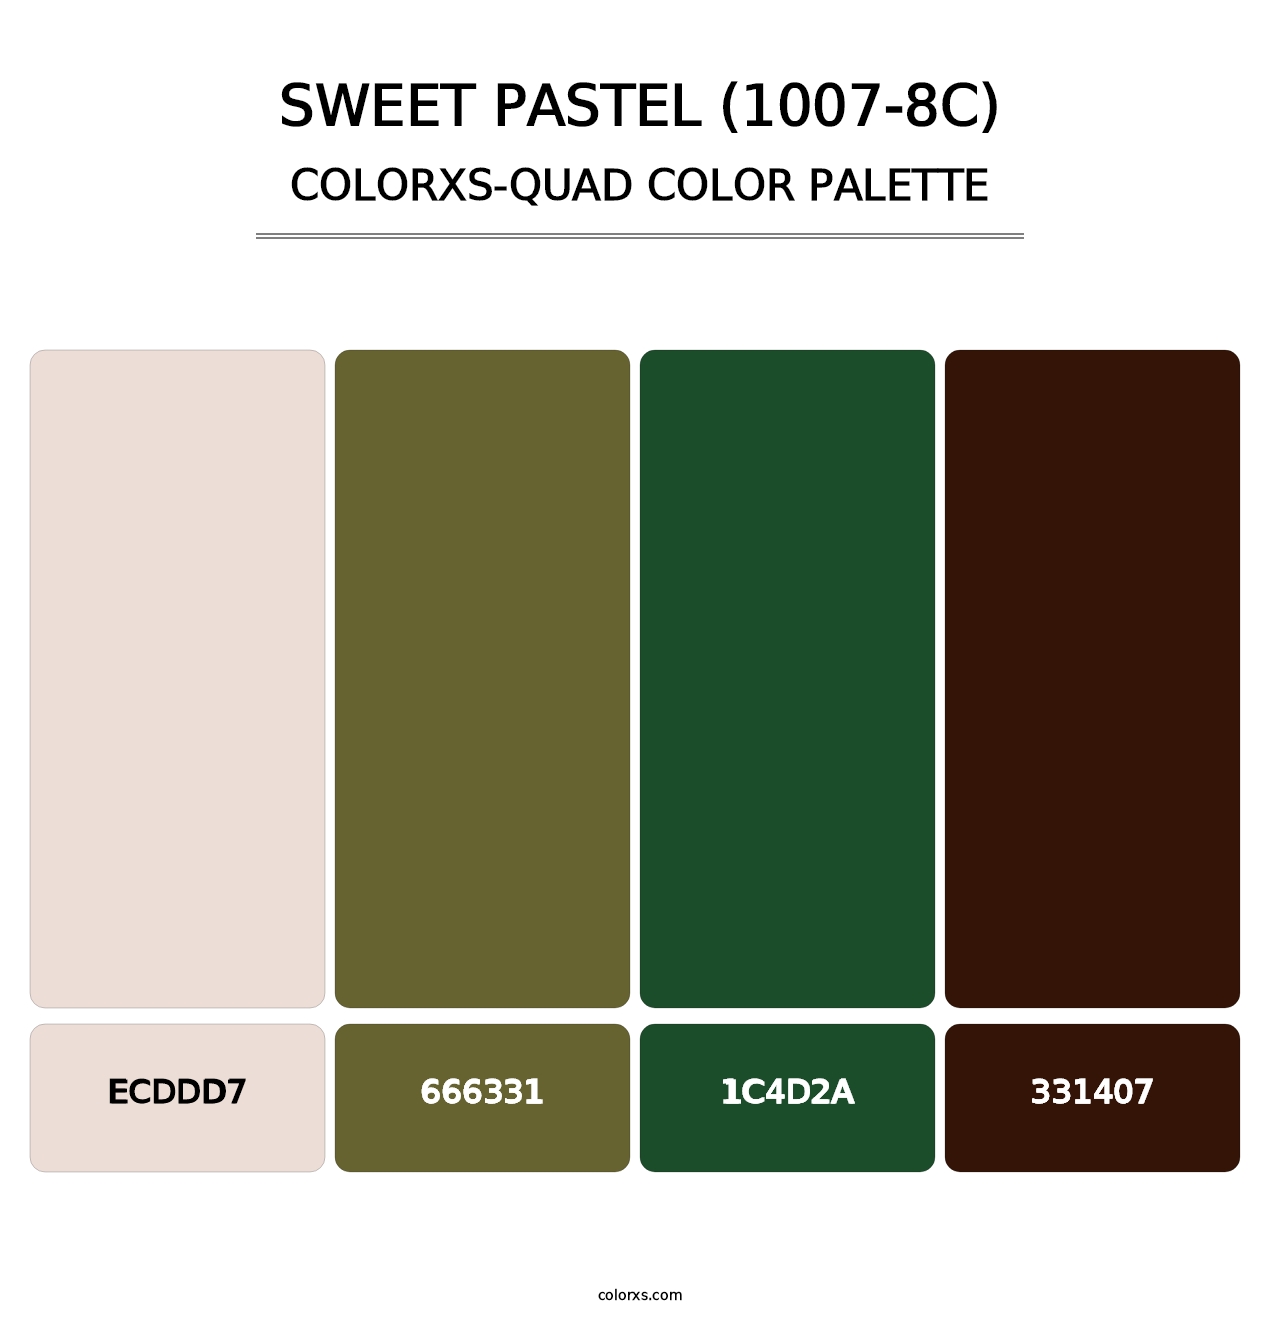 Sweet Pastel (1007-8C) - Colorxs Quad Palette